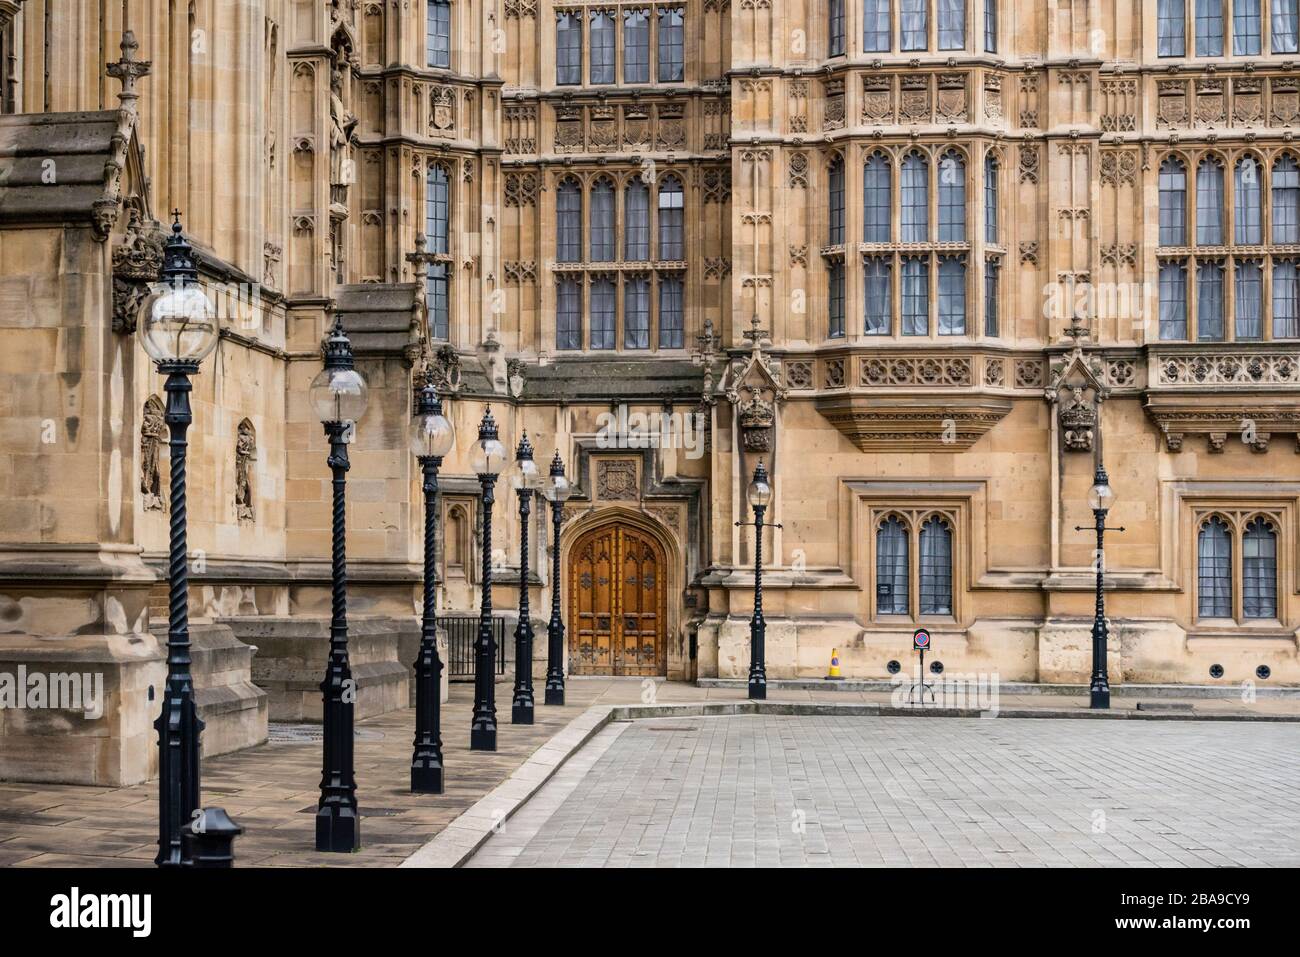 Architektonische Details des Palace of Westminster, London, Großbritannien Stockfoto